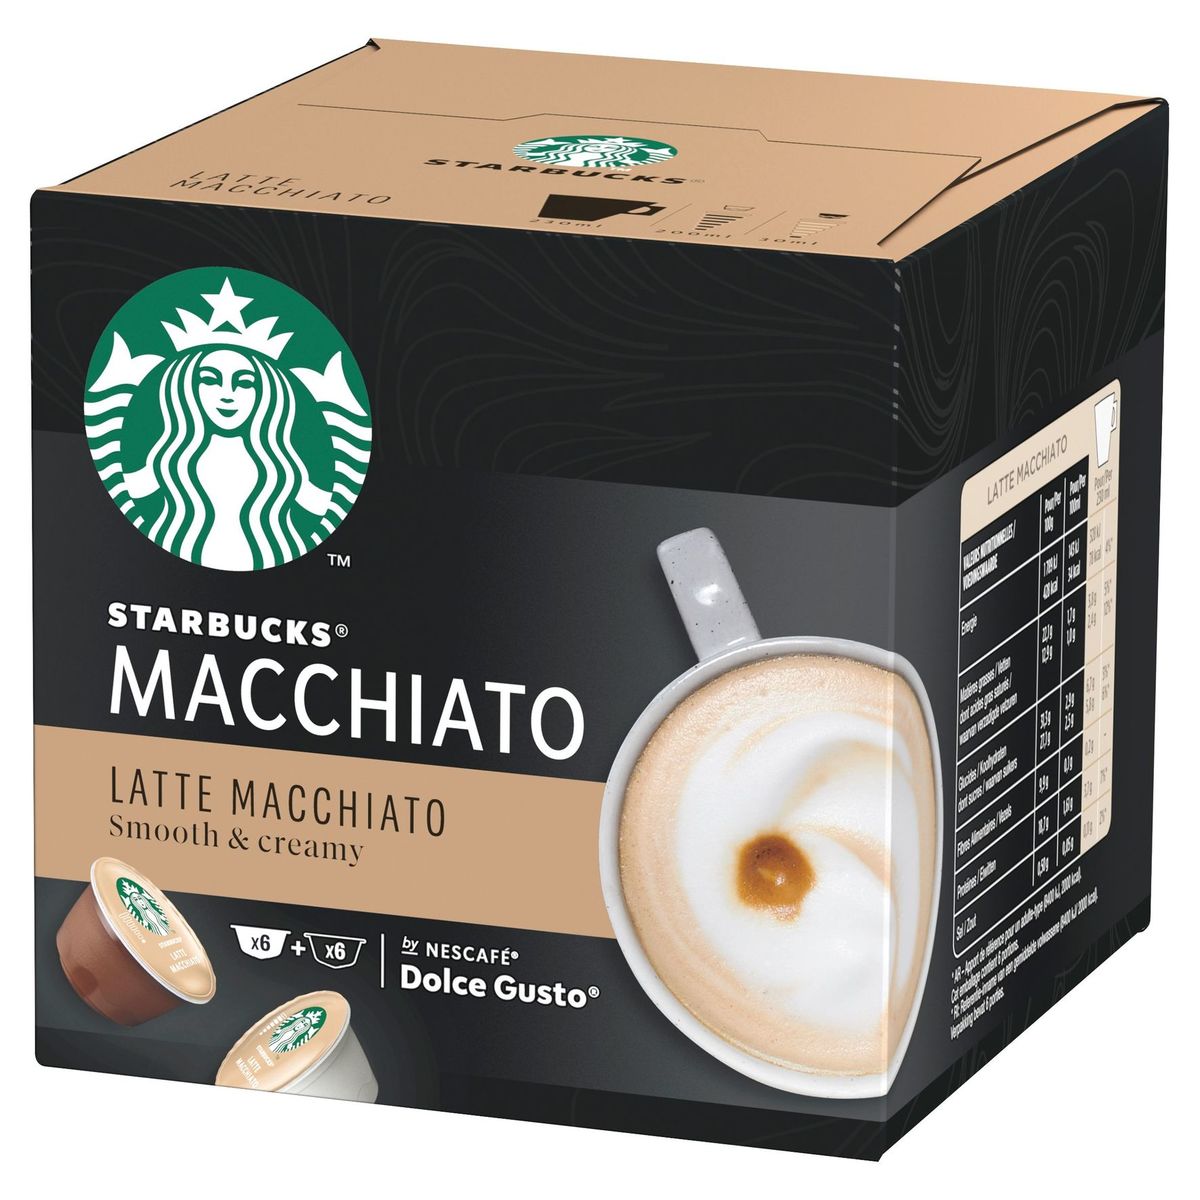 Starbucks Latte Macchiato by NESCAFE DOLCE GUSTO 6+6 Capsules, 129 g